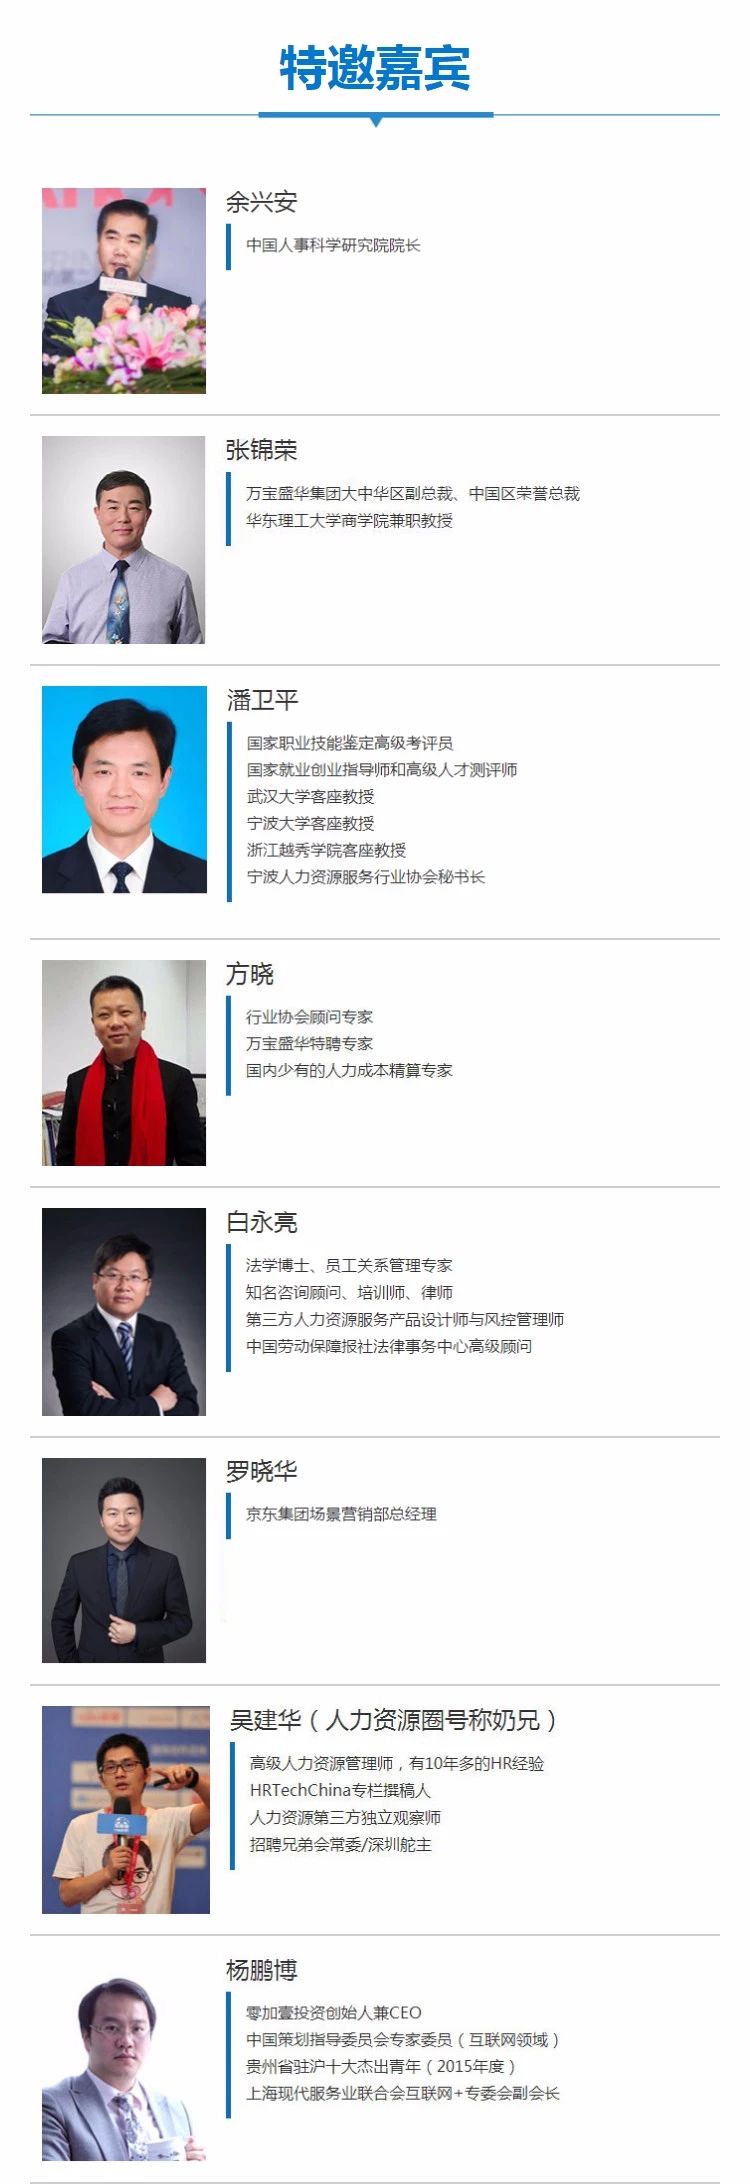 2018中国中原人力资源高峰论坛暨CEO私享会